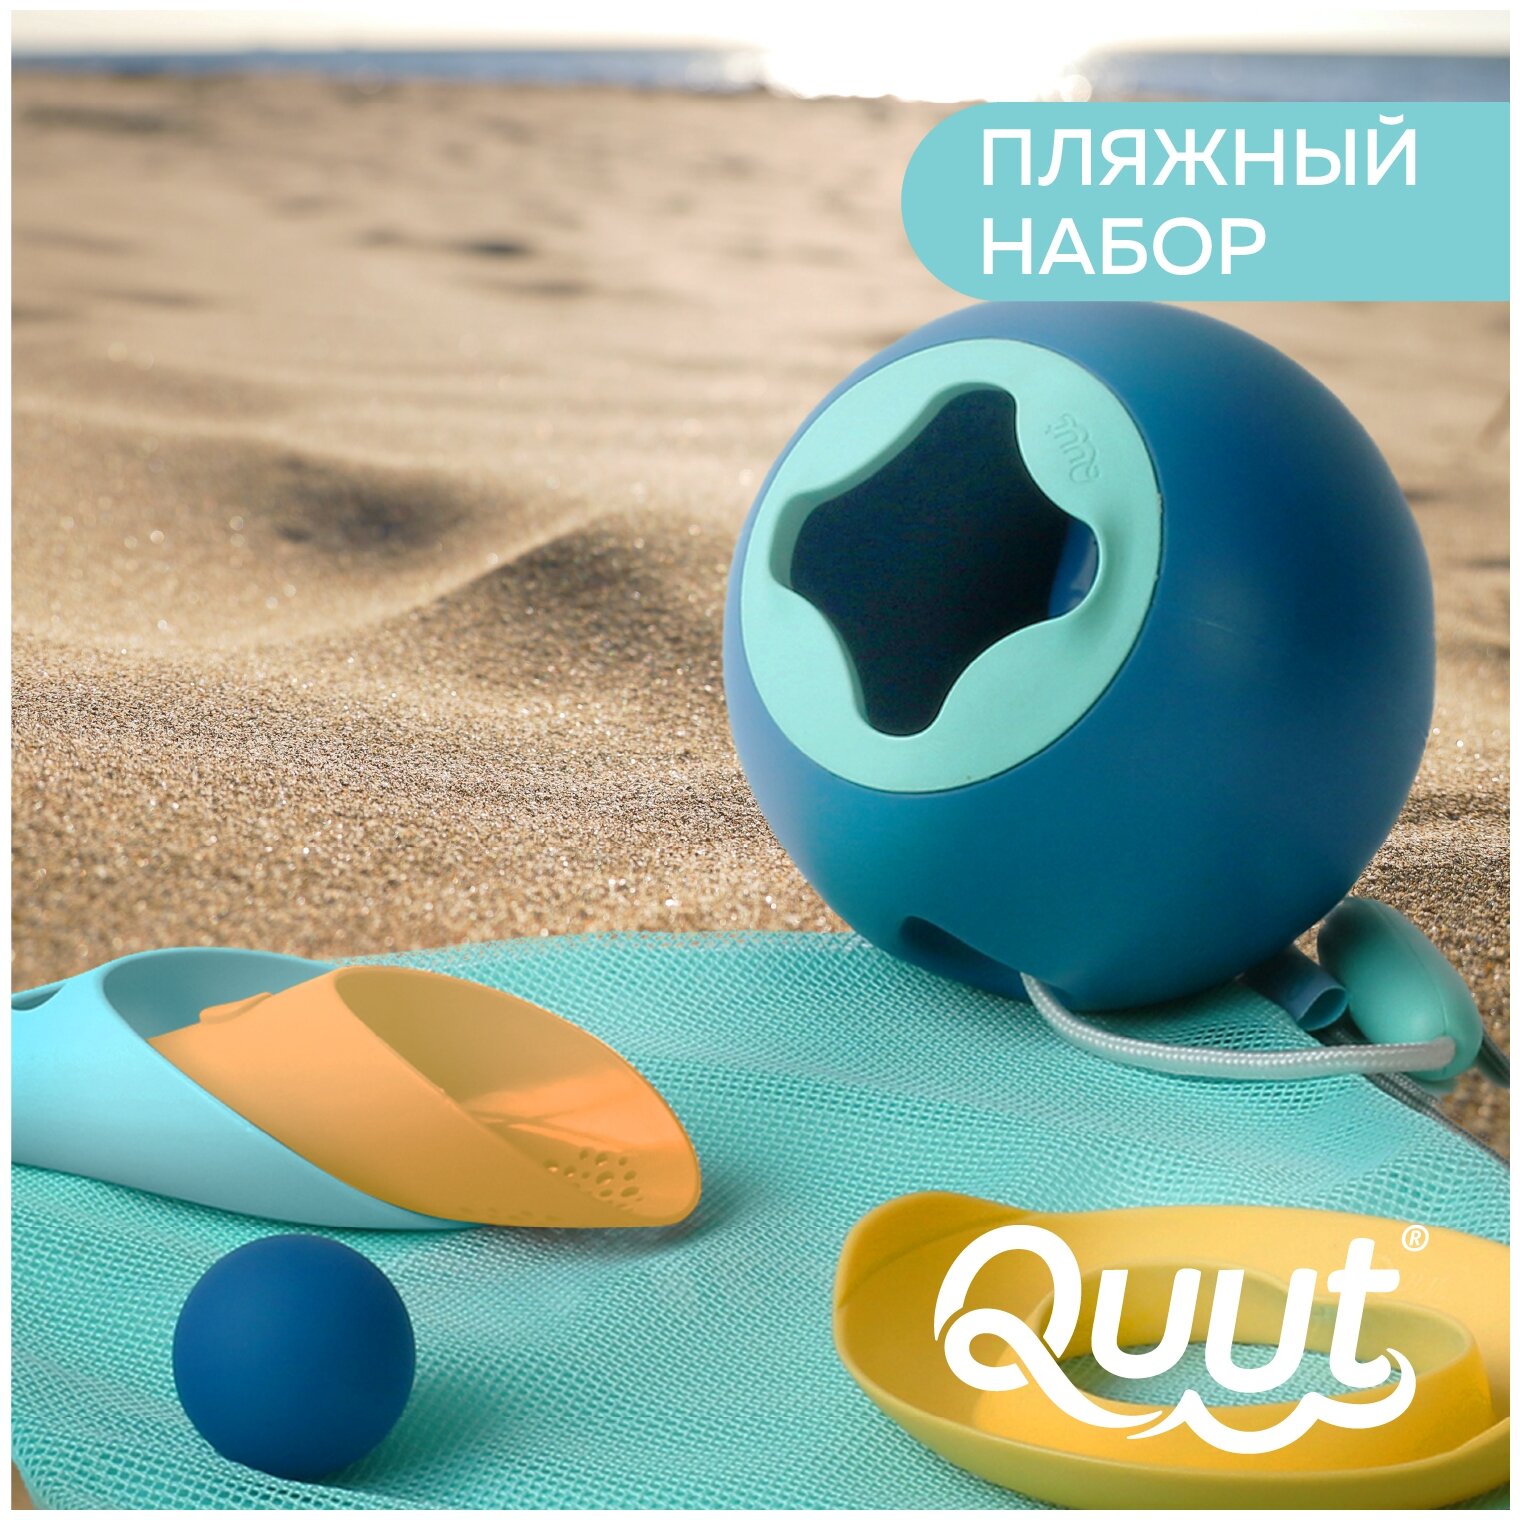 Пляжный набор Quut Mini Ballo/Cuppi/Magic Shapeo - фото №1